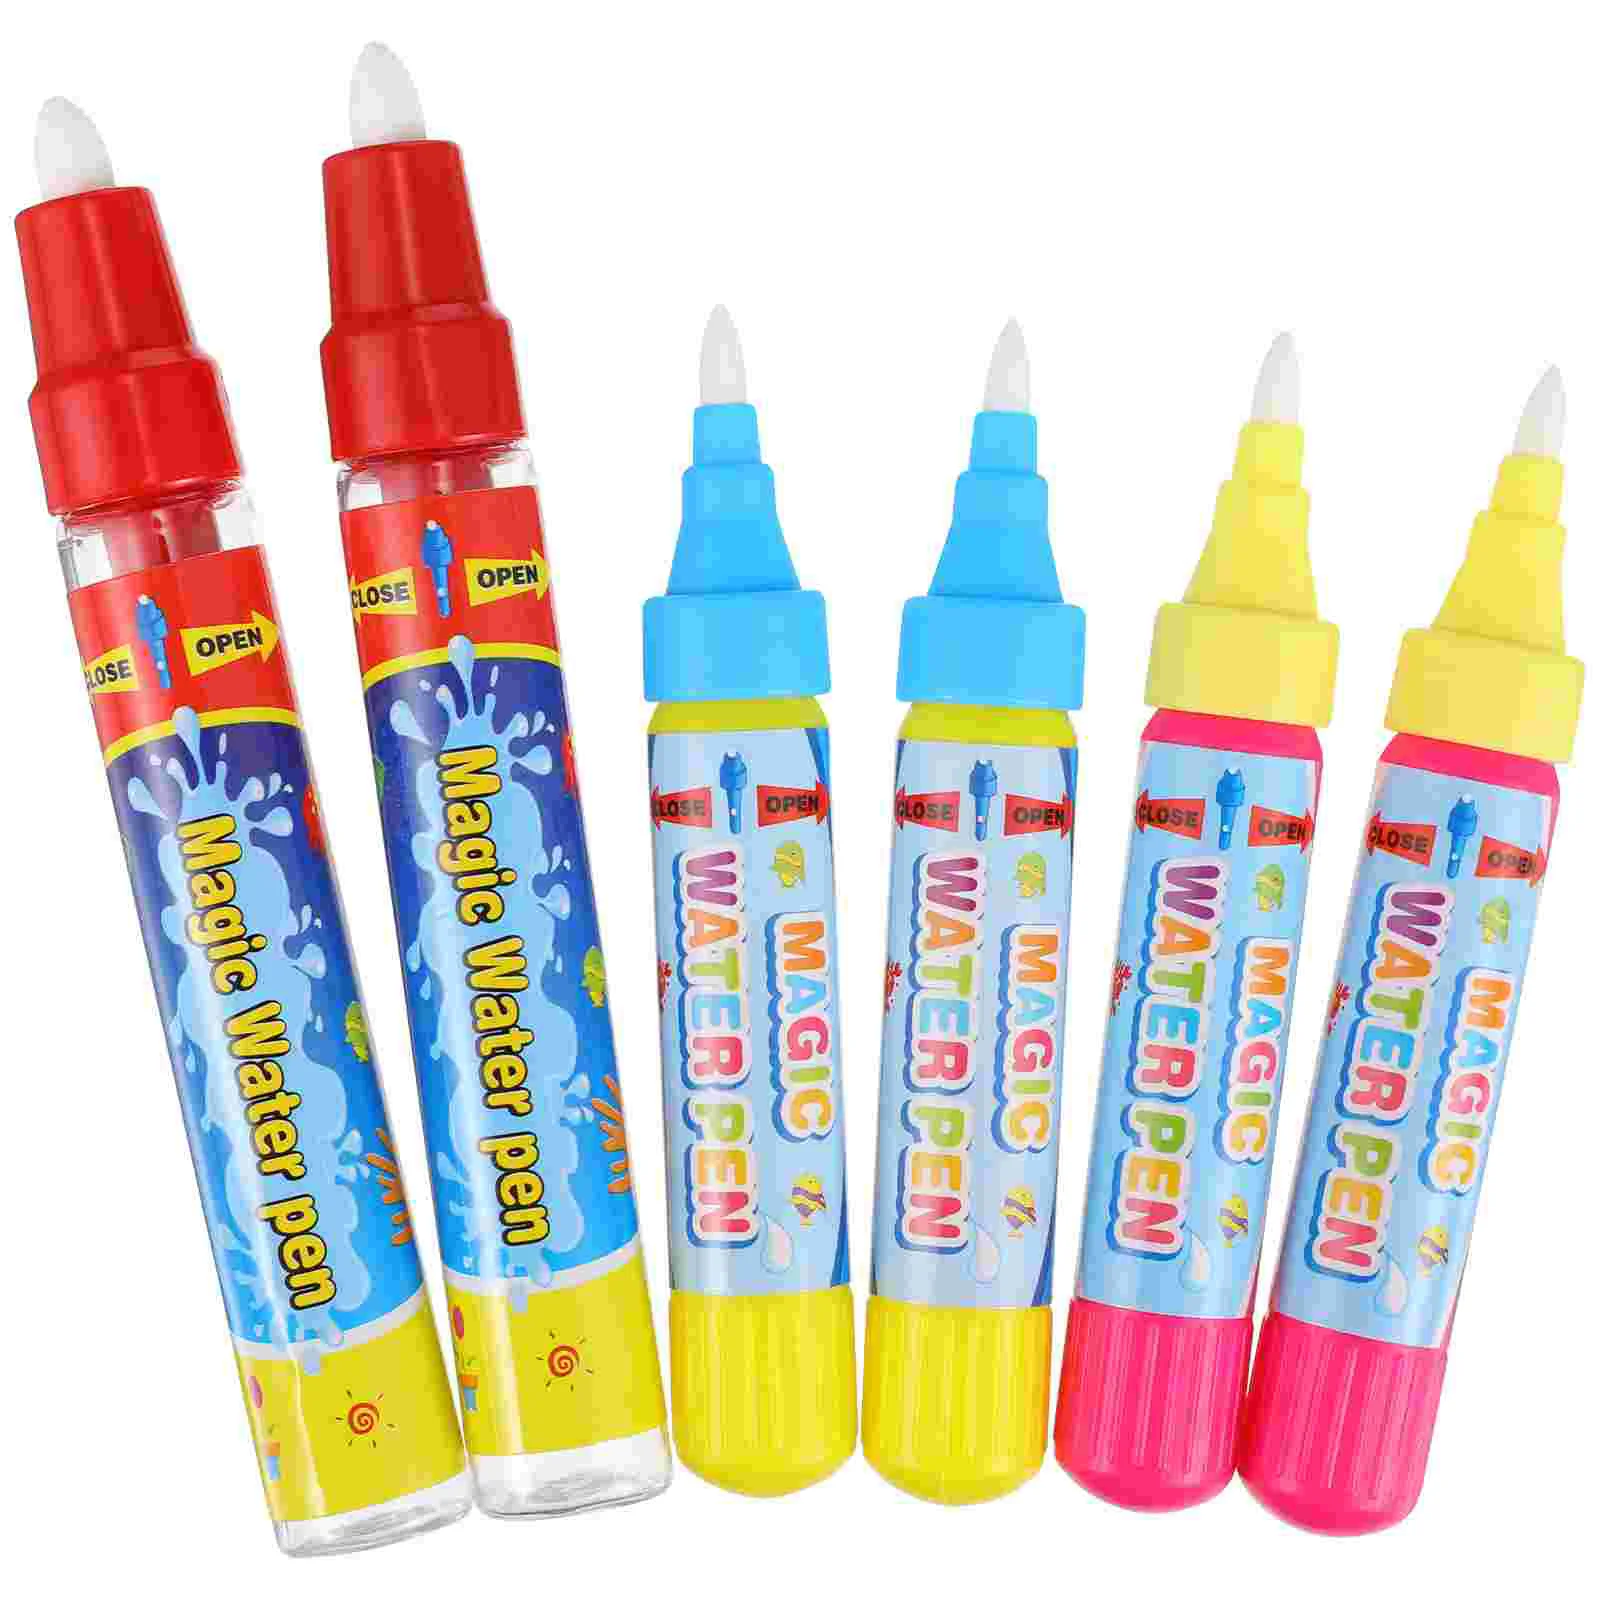 

6 шт. акваручки, акваручки для граффити, сменные маркеры для рисования на воде, ручки для малышей, детей